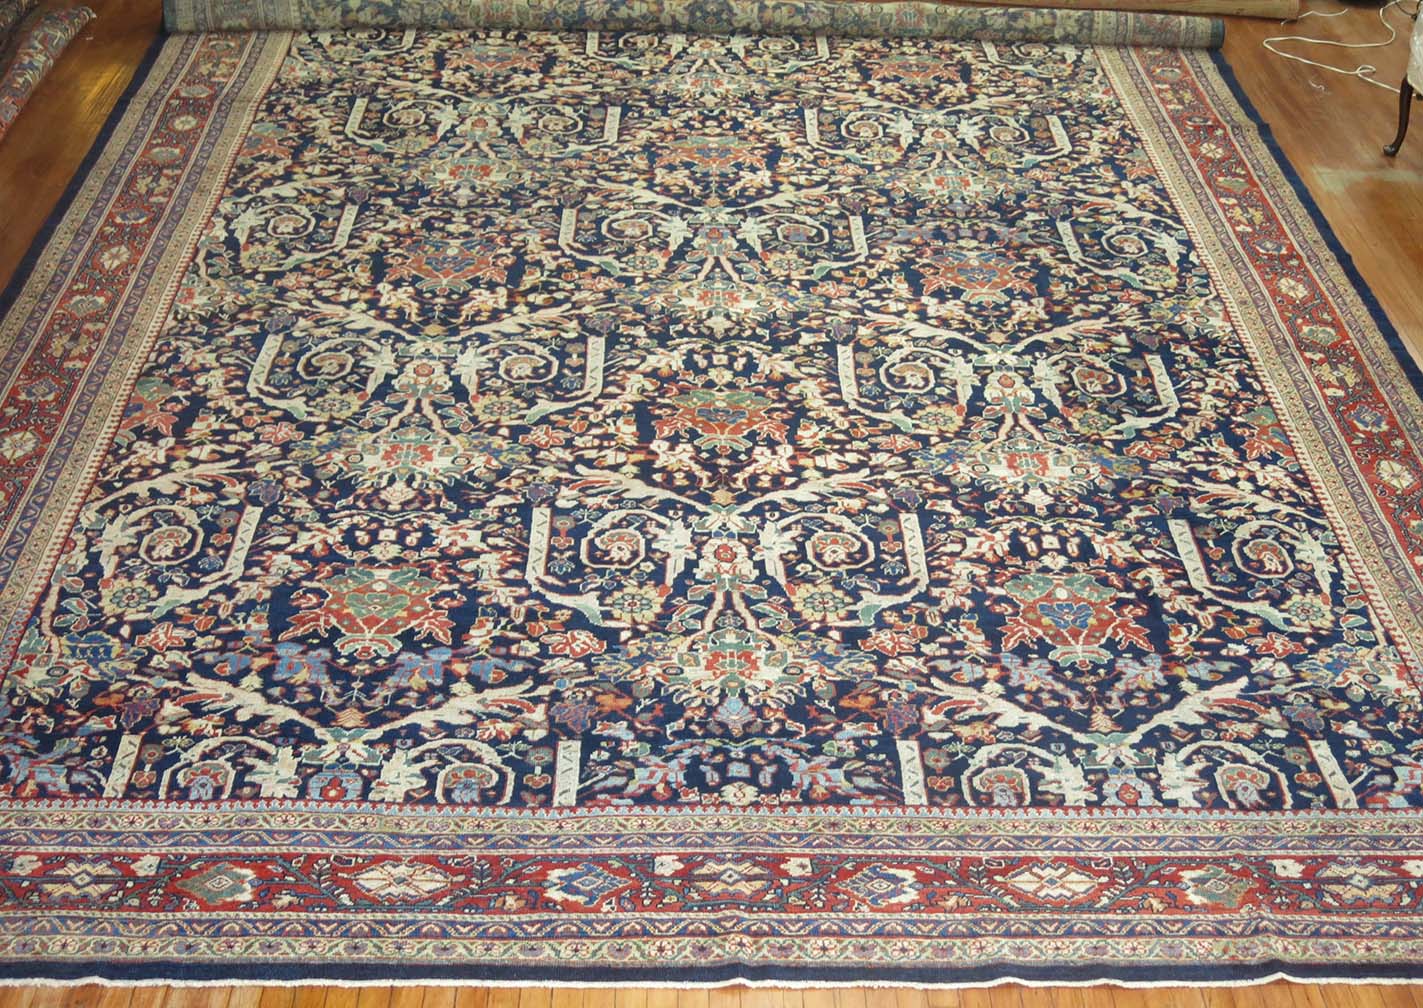 Antique mahal Carpet - # 53731